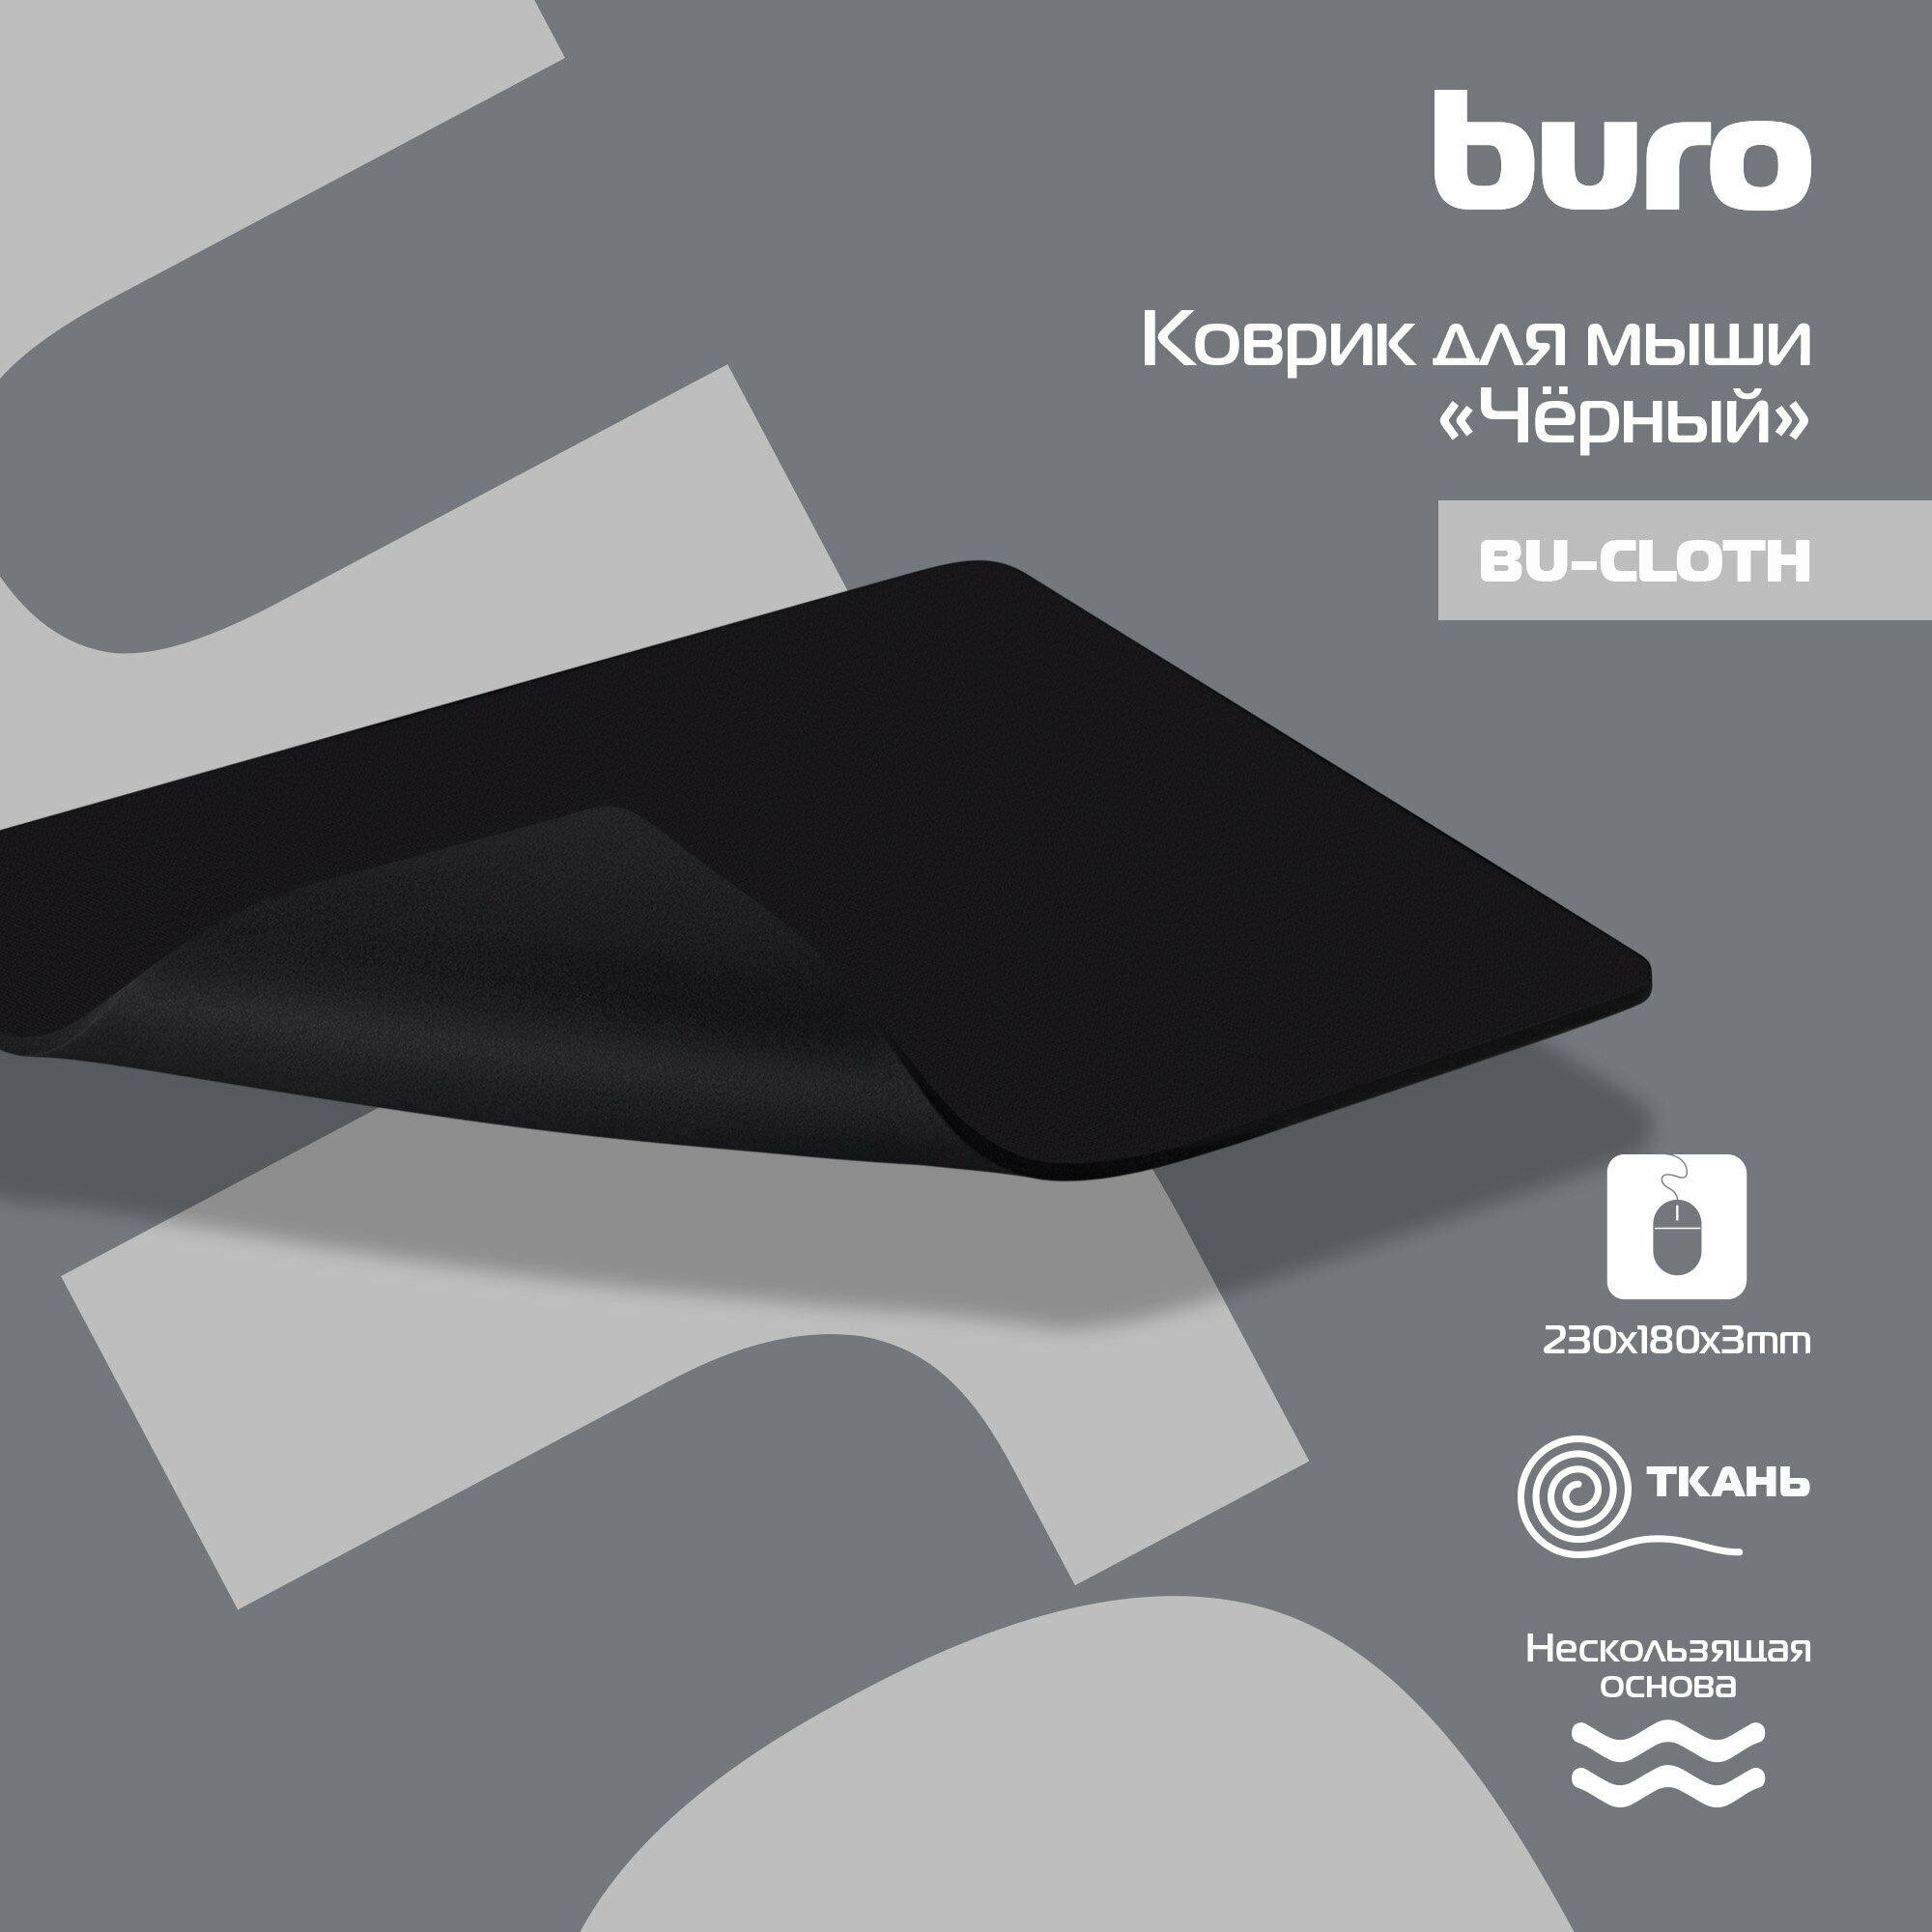 Коврик для мыши BURO BU-CLOTH черный [bu-cloth/black] - фото №10